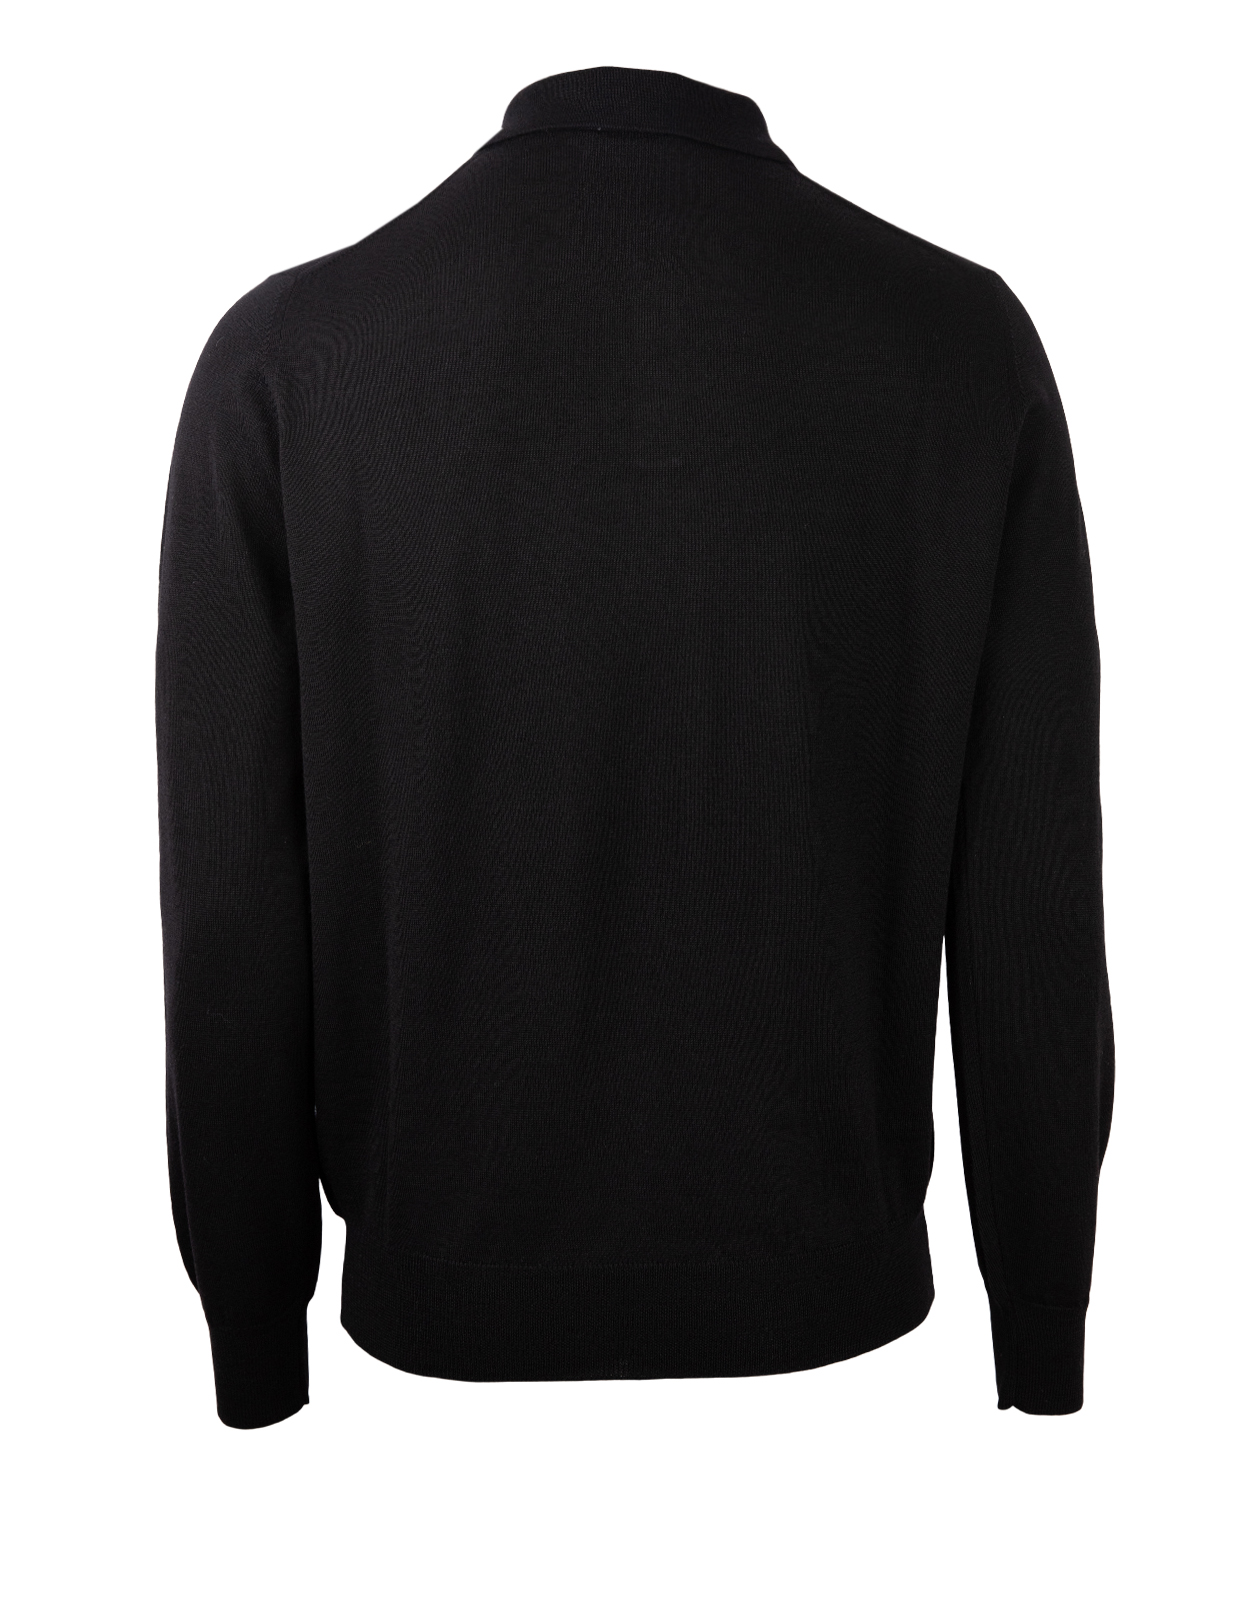 Poloshirt Sweater Merino Black